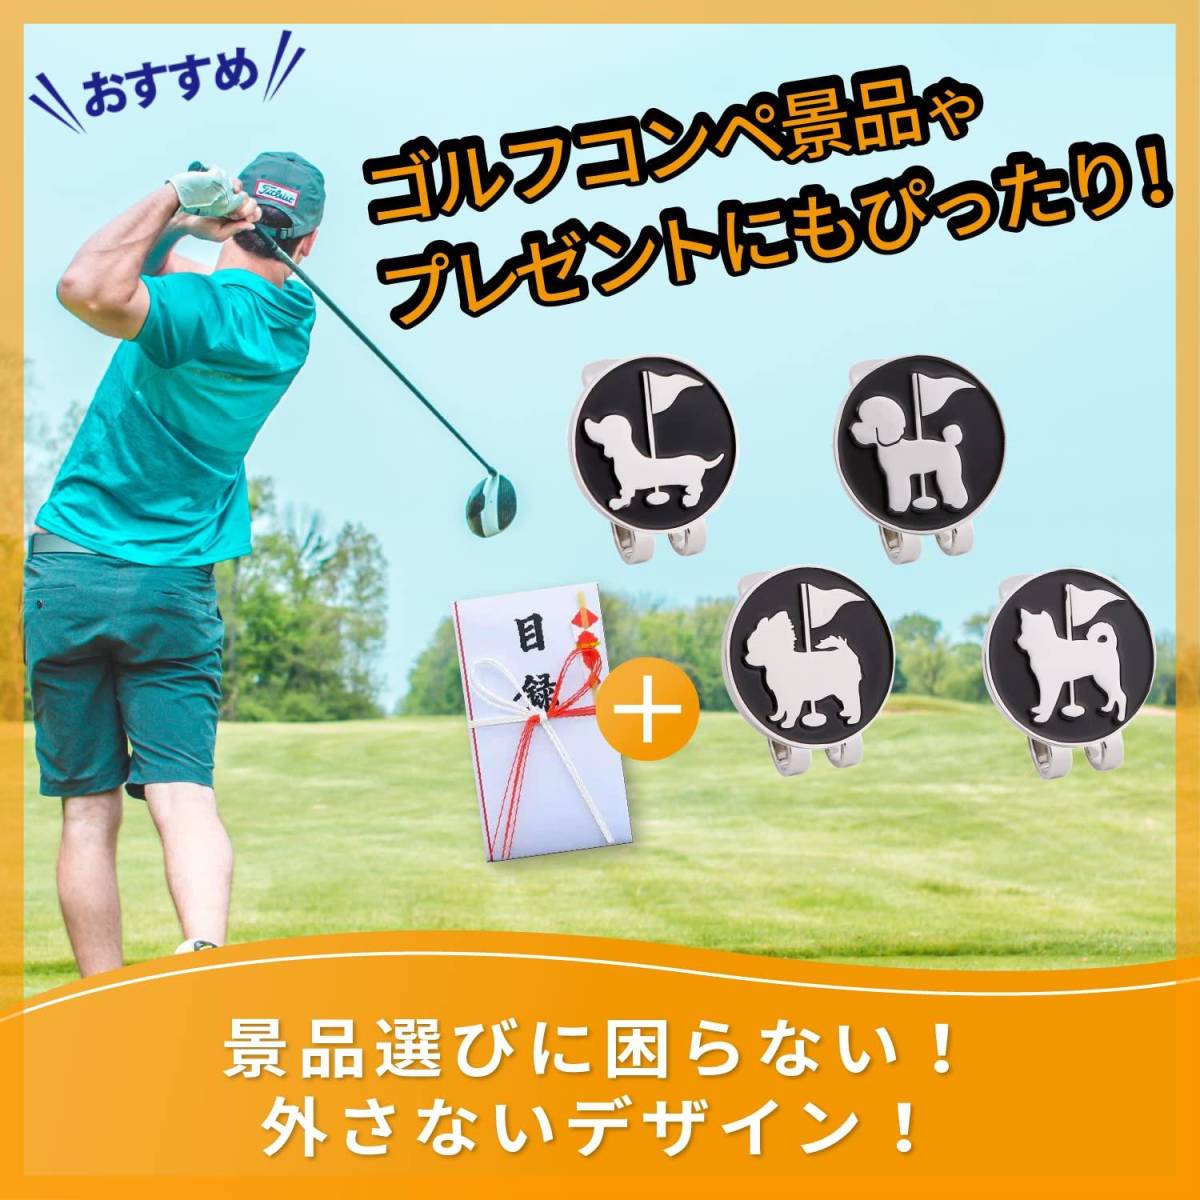 【人気商品】ゴルフマーカー マグネットマーカー 犬 ゴルフ マーカー グリーンマーカー グラウンドゴルフ グランドゴルフ マグネッの画像2